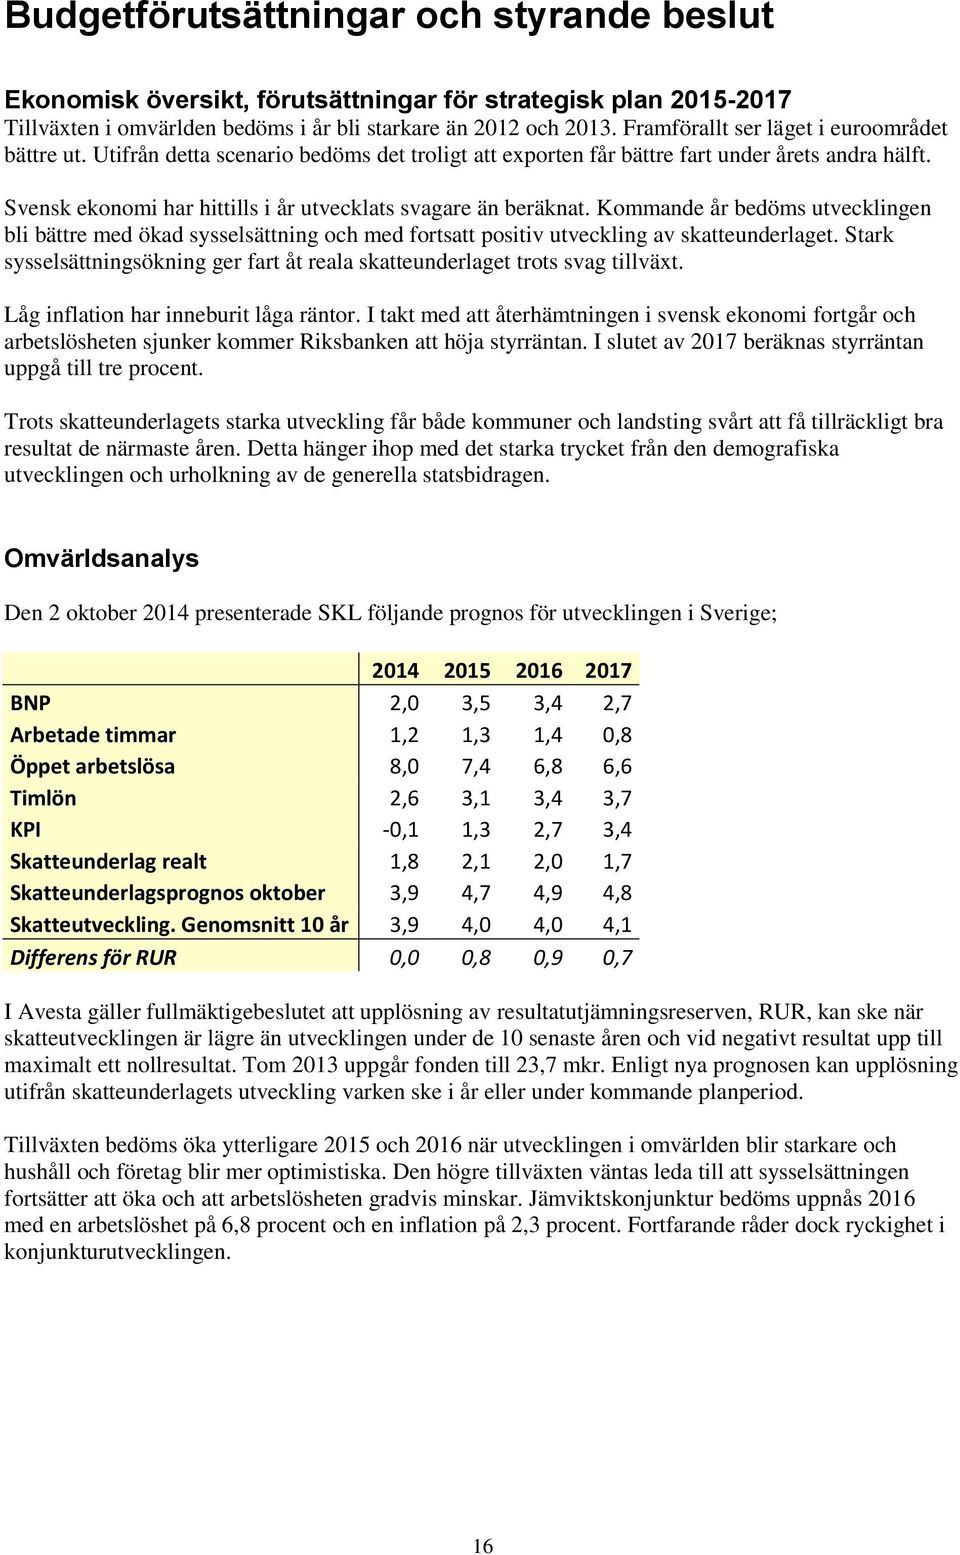 Svensk ekonomi har hittills i år utvecklats svagare än beräknat. Kommande år bedöms utvecklingen bli bättre med ökad sysselsättning och med fortsatt positiv utveckling av skatteunderlaget.